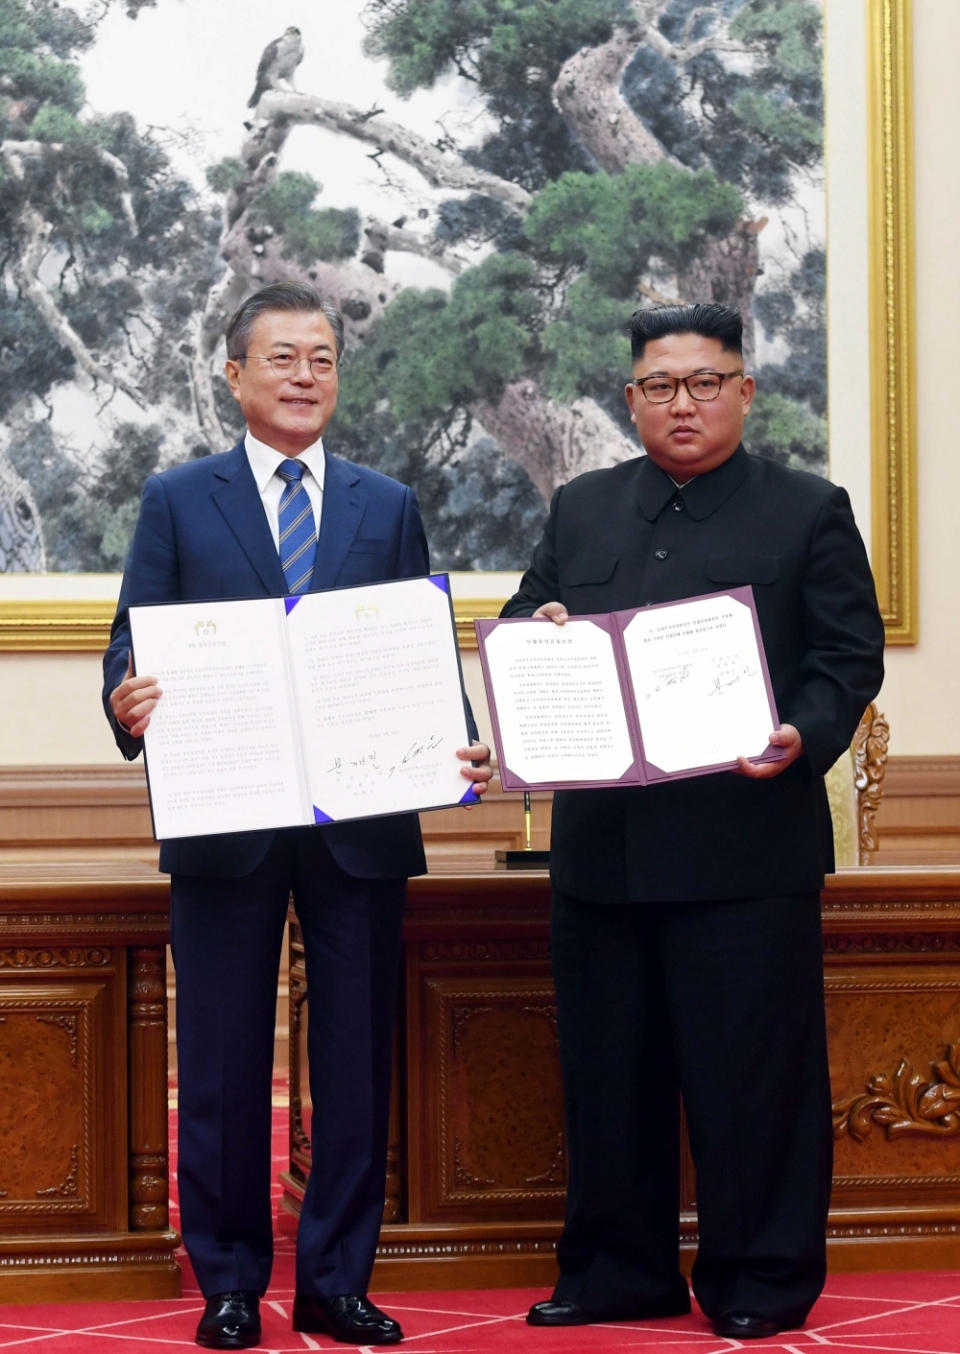 문재인 대통령과 김정은 국무위원장이 19일 오전 평양 백화원 영빈관에서 평양공동선언문에 서명한 후 합의서를 들어보이고 있다.